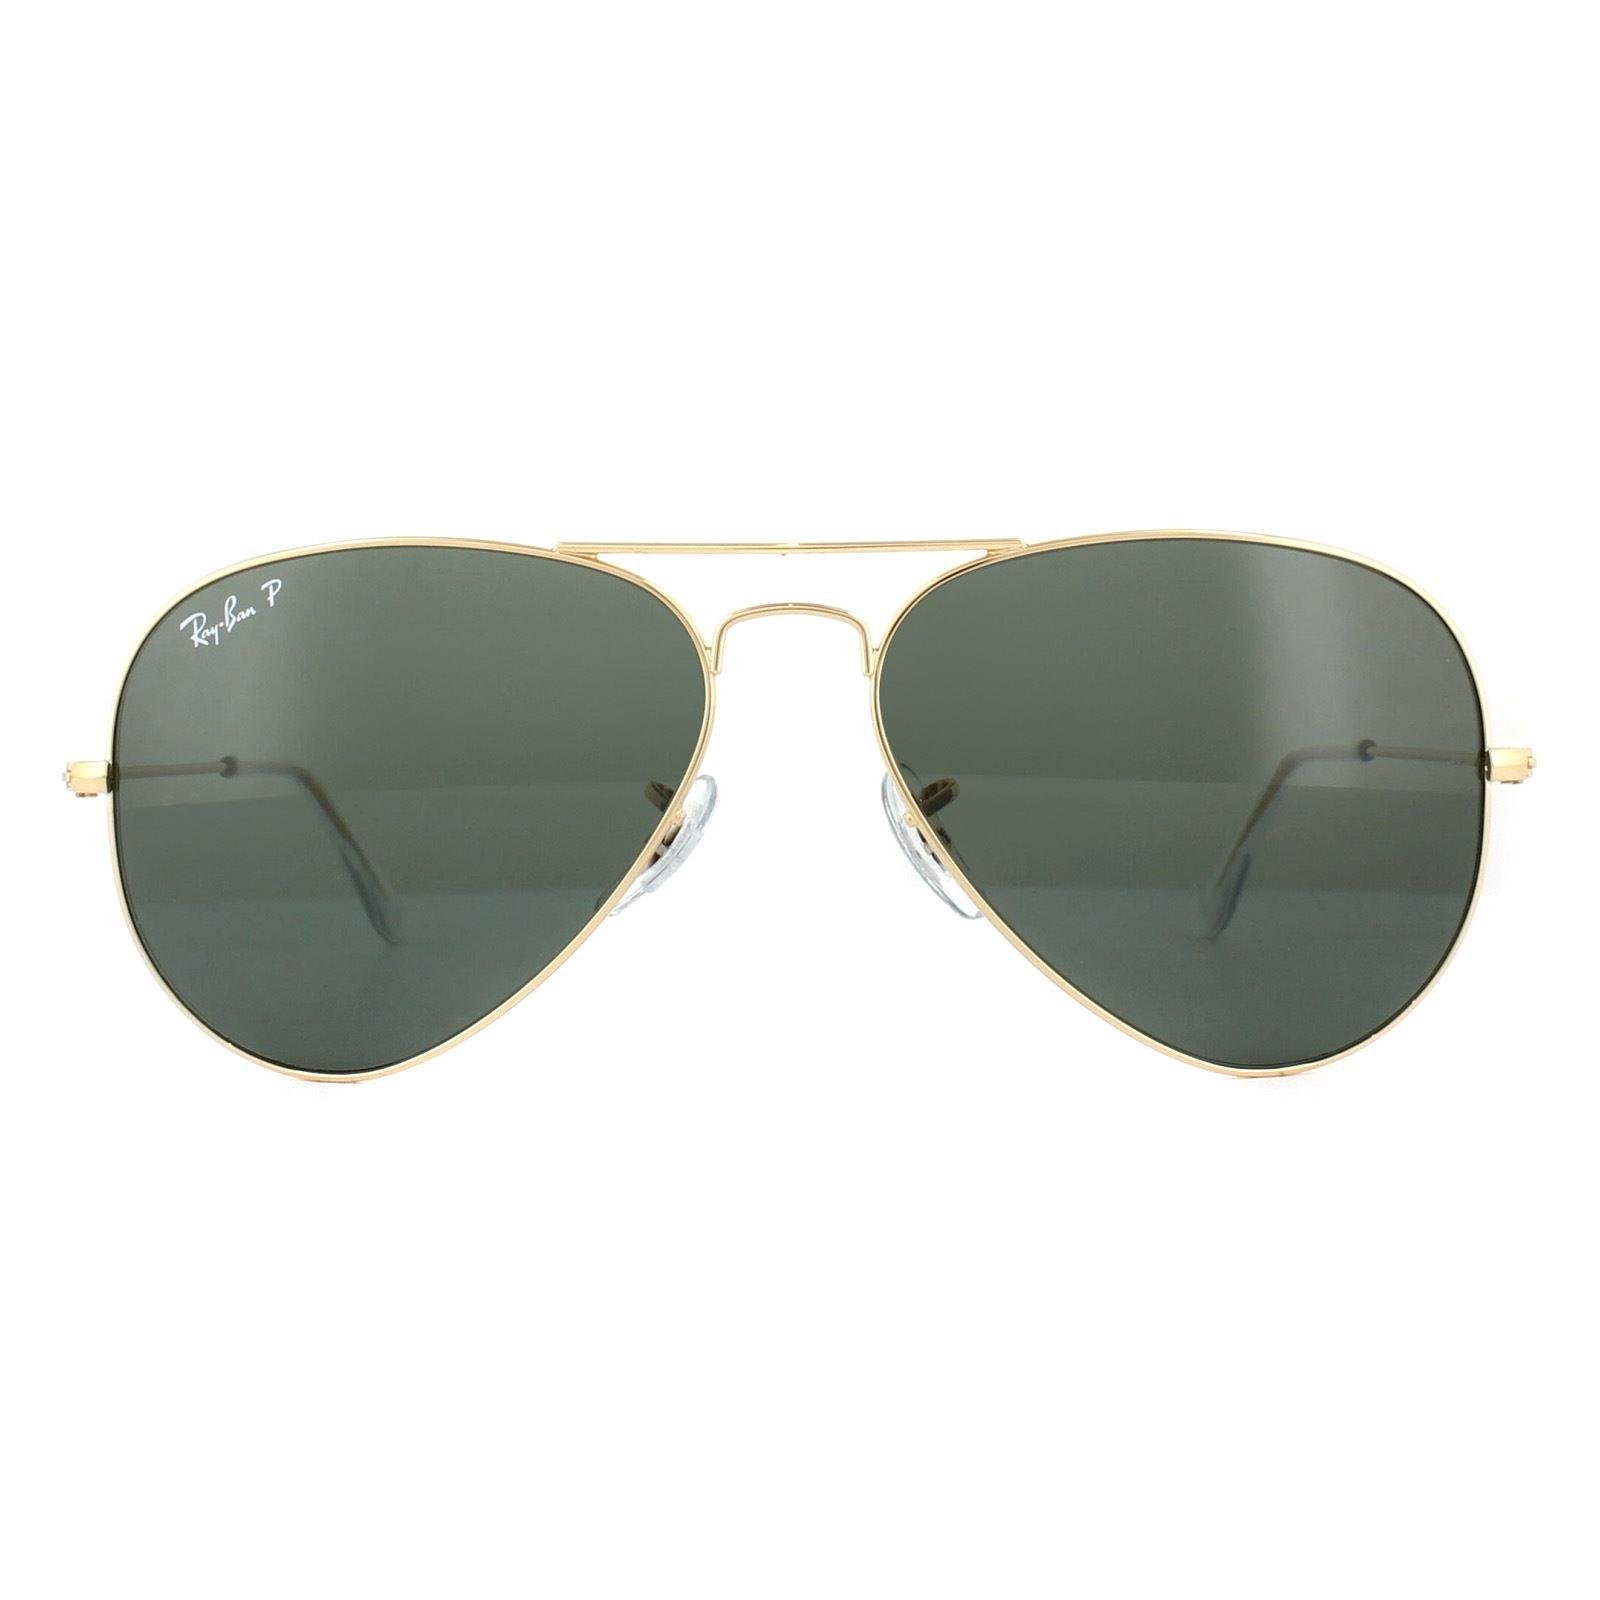 Золотисто-зеленые поляризованные солнцезащитные очки Aviator Ray-Ban, золото